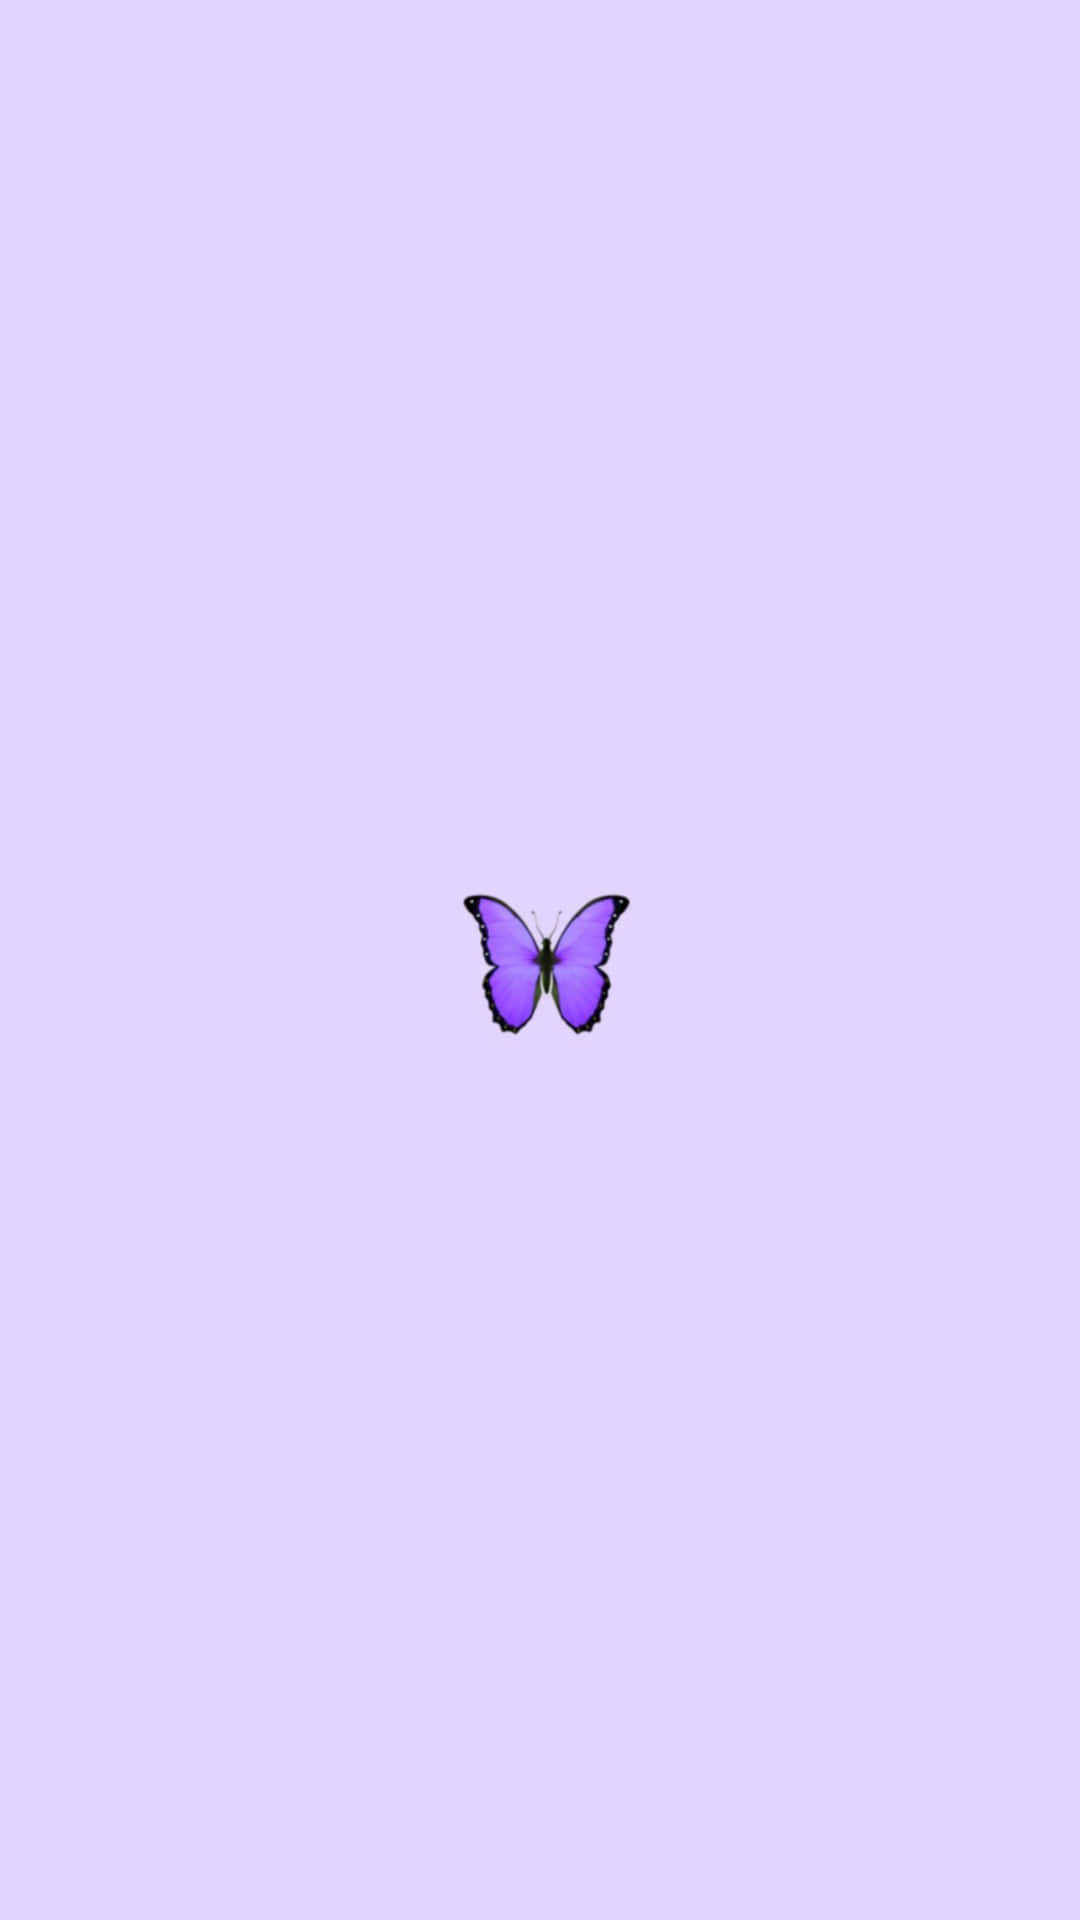 Download Cute Purple Butterfly Wallpaper 